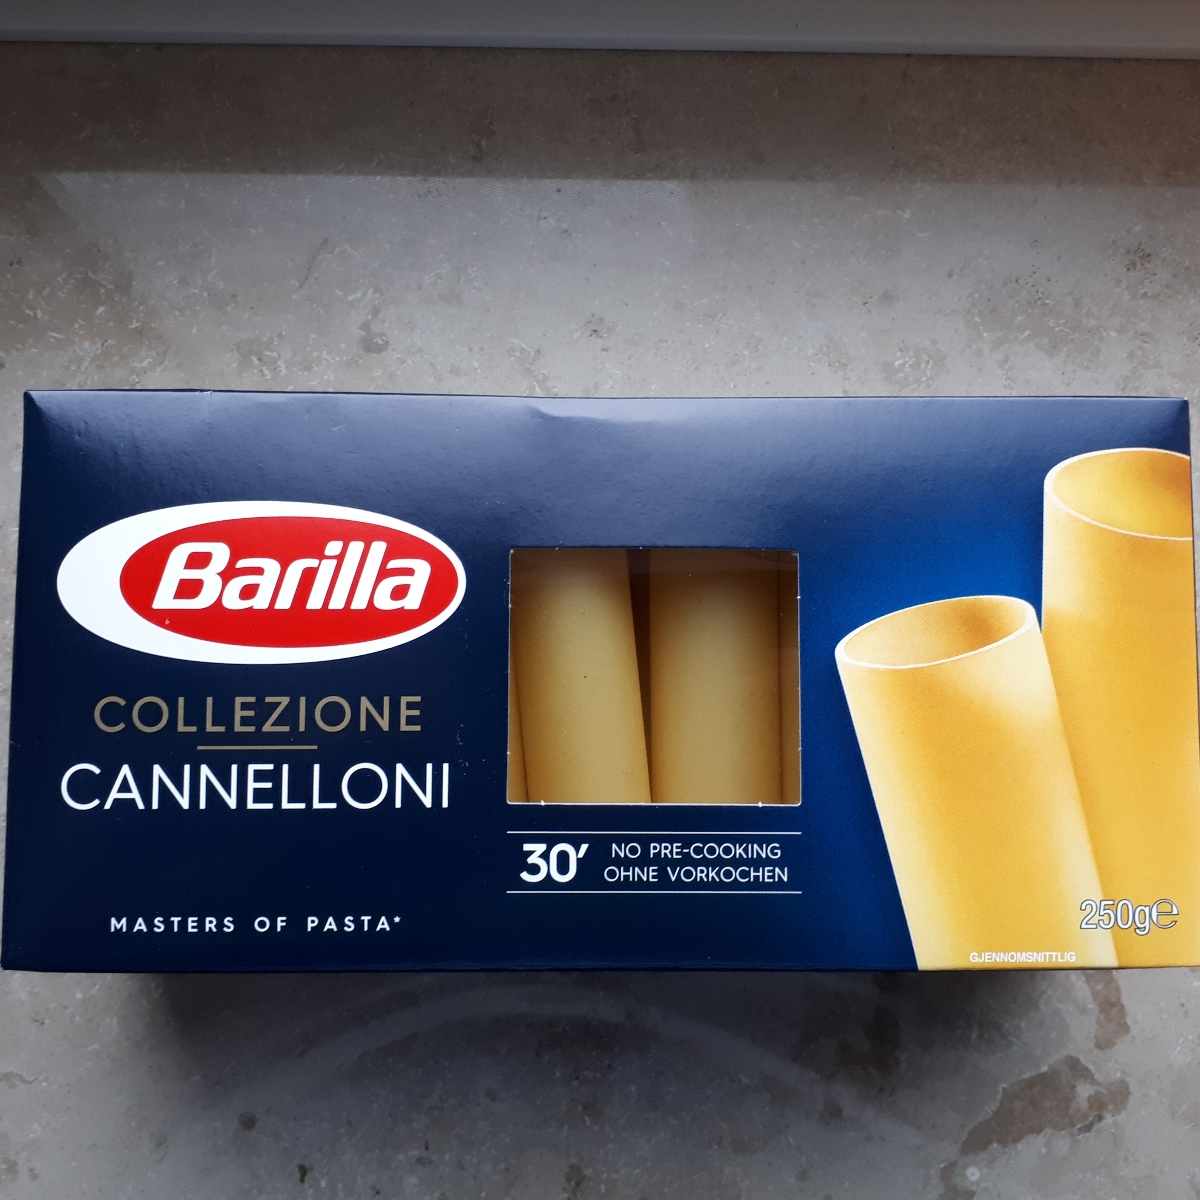 Barilla Cannelloni Reviews | abillion